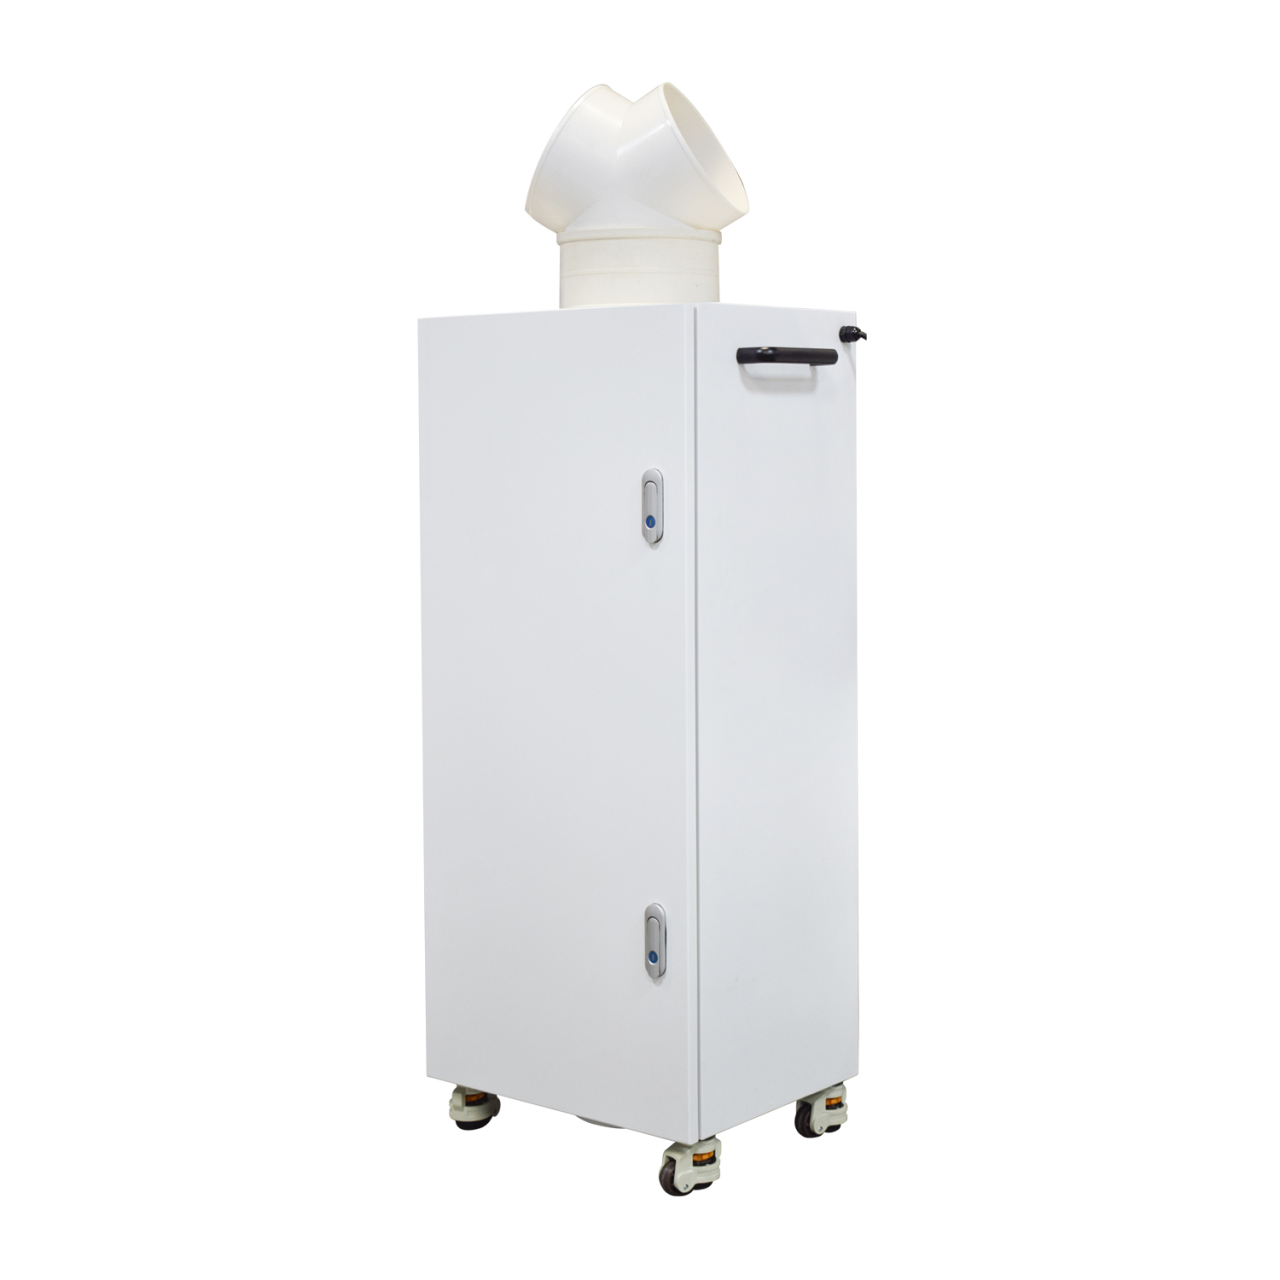 EddaAir PS-506TM  mobile ionizer air purifier